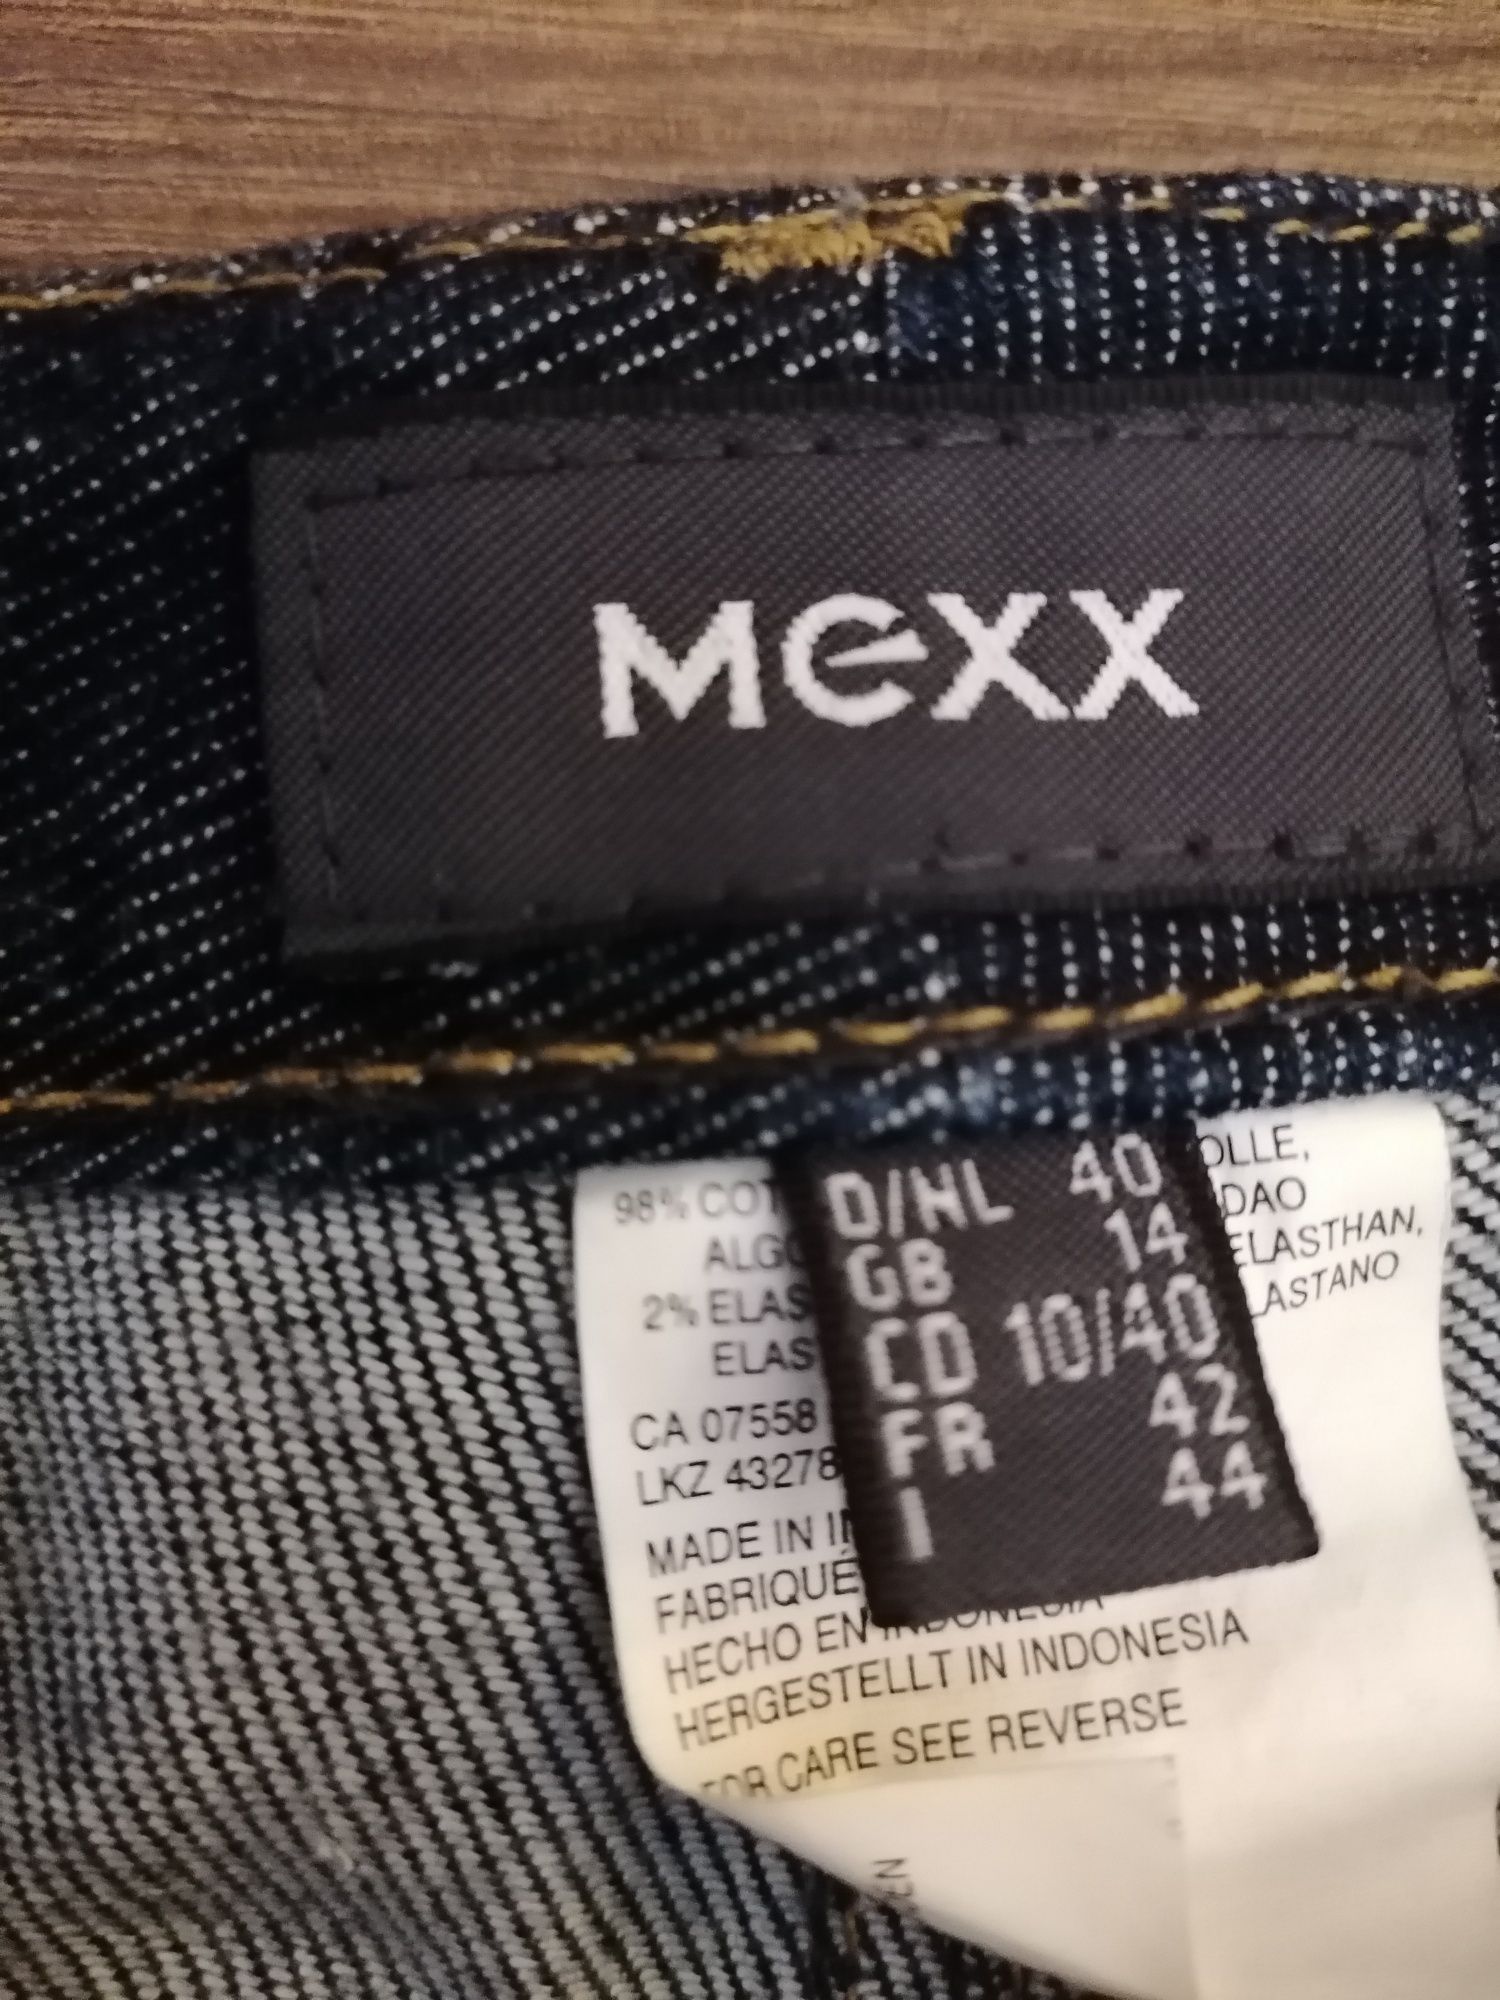 Dżinsy/jeansy damskie Mexx "dzwony"